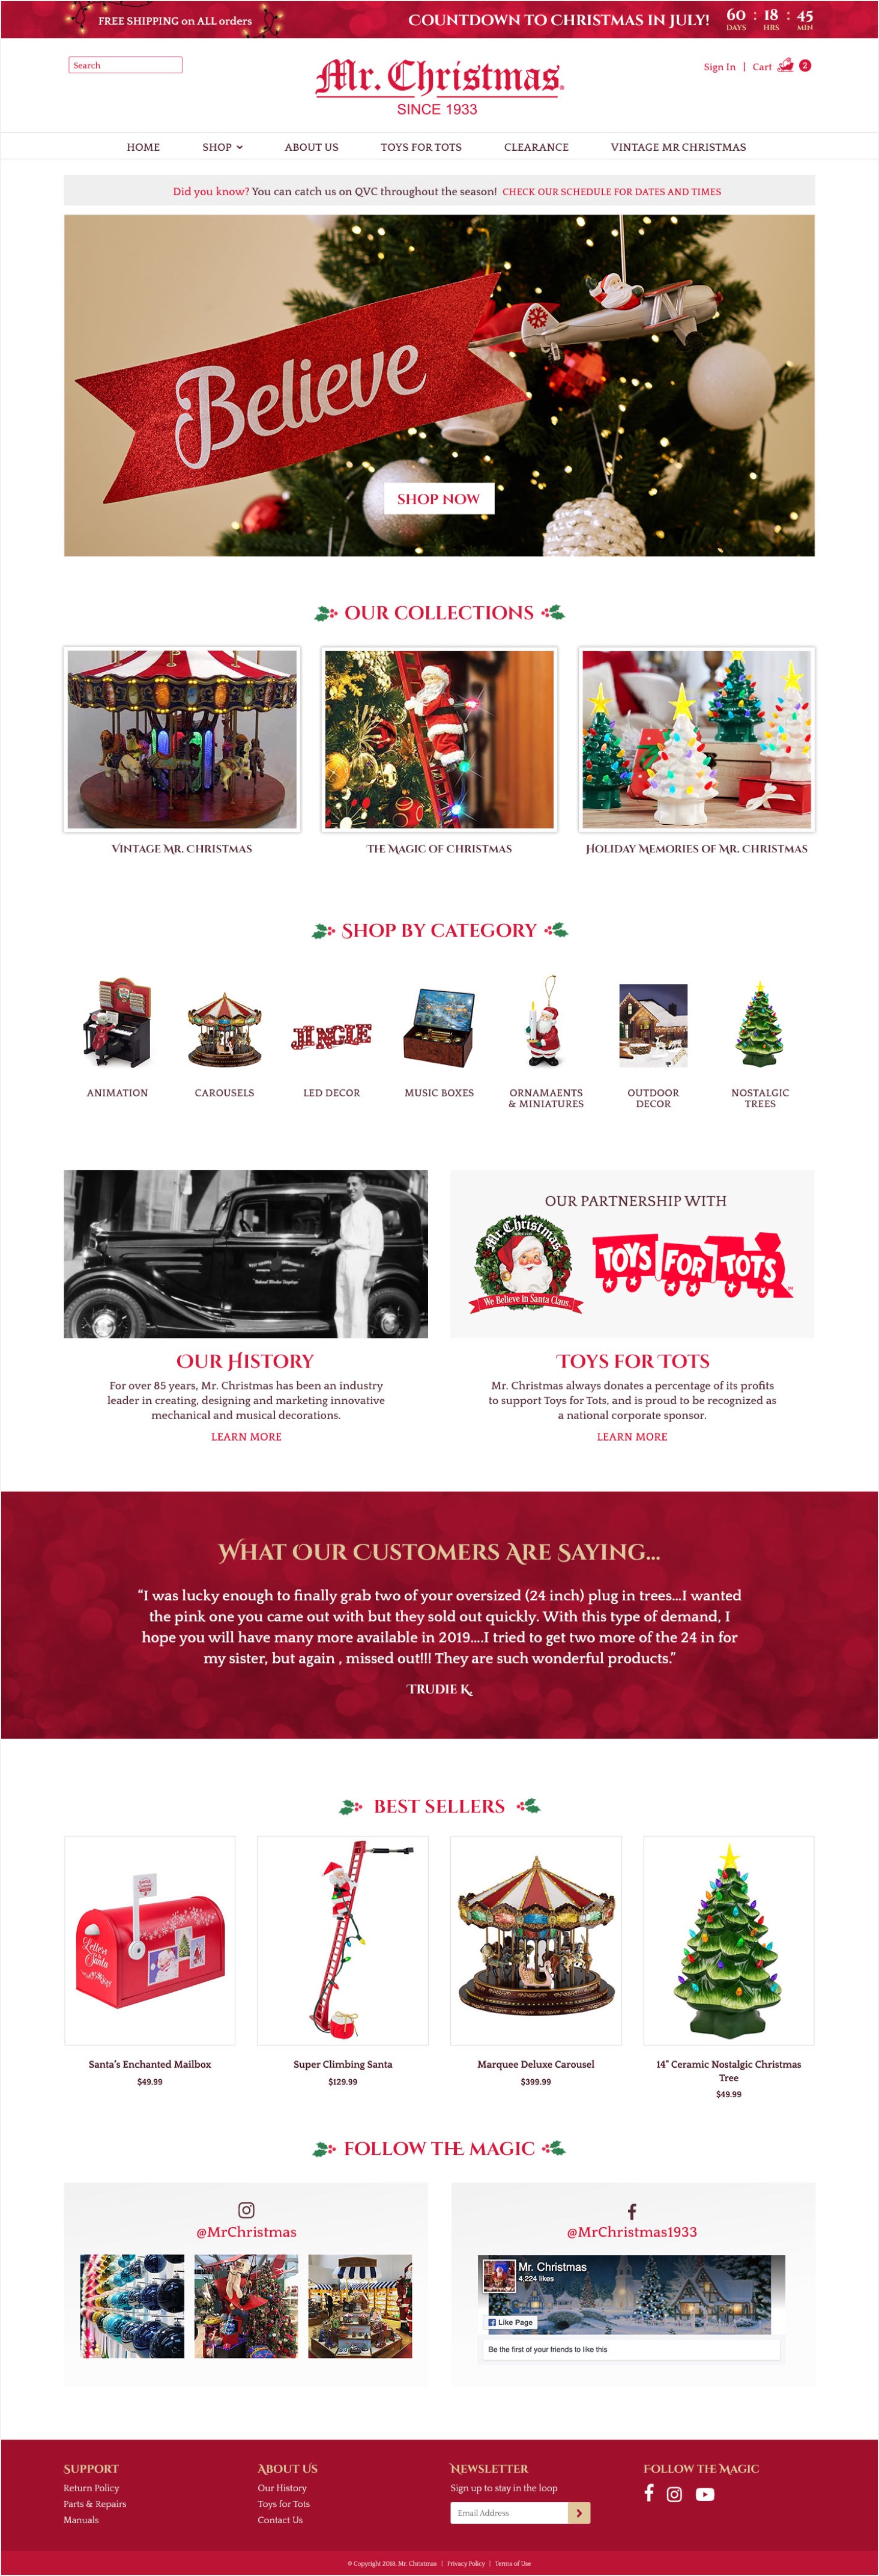 Mr. Christmas Homepage